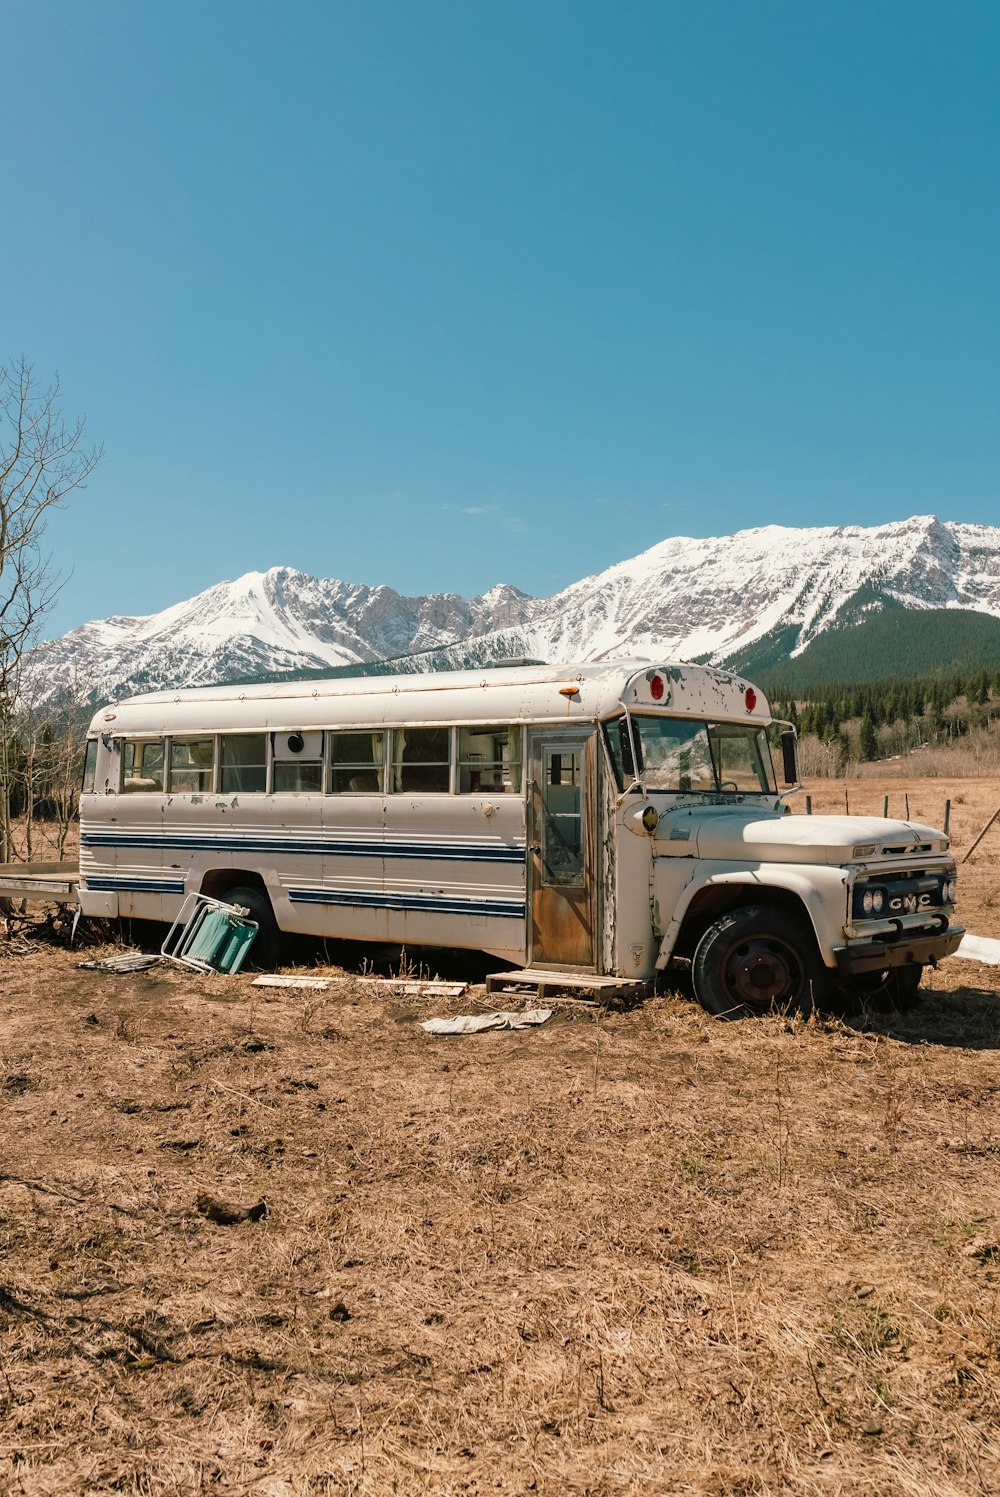 Un vieux bus assis dans un champ avec des montagnes en arrière-plan